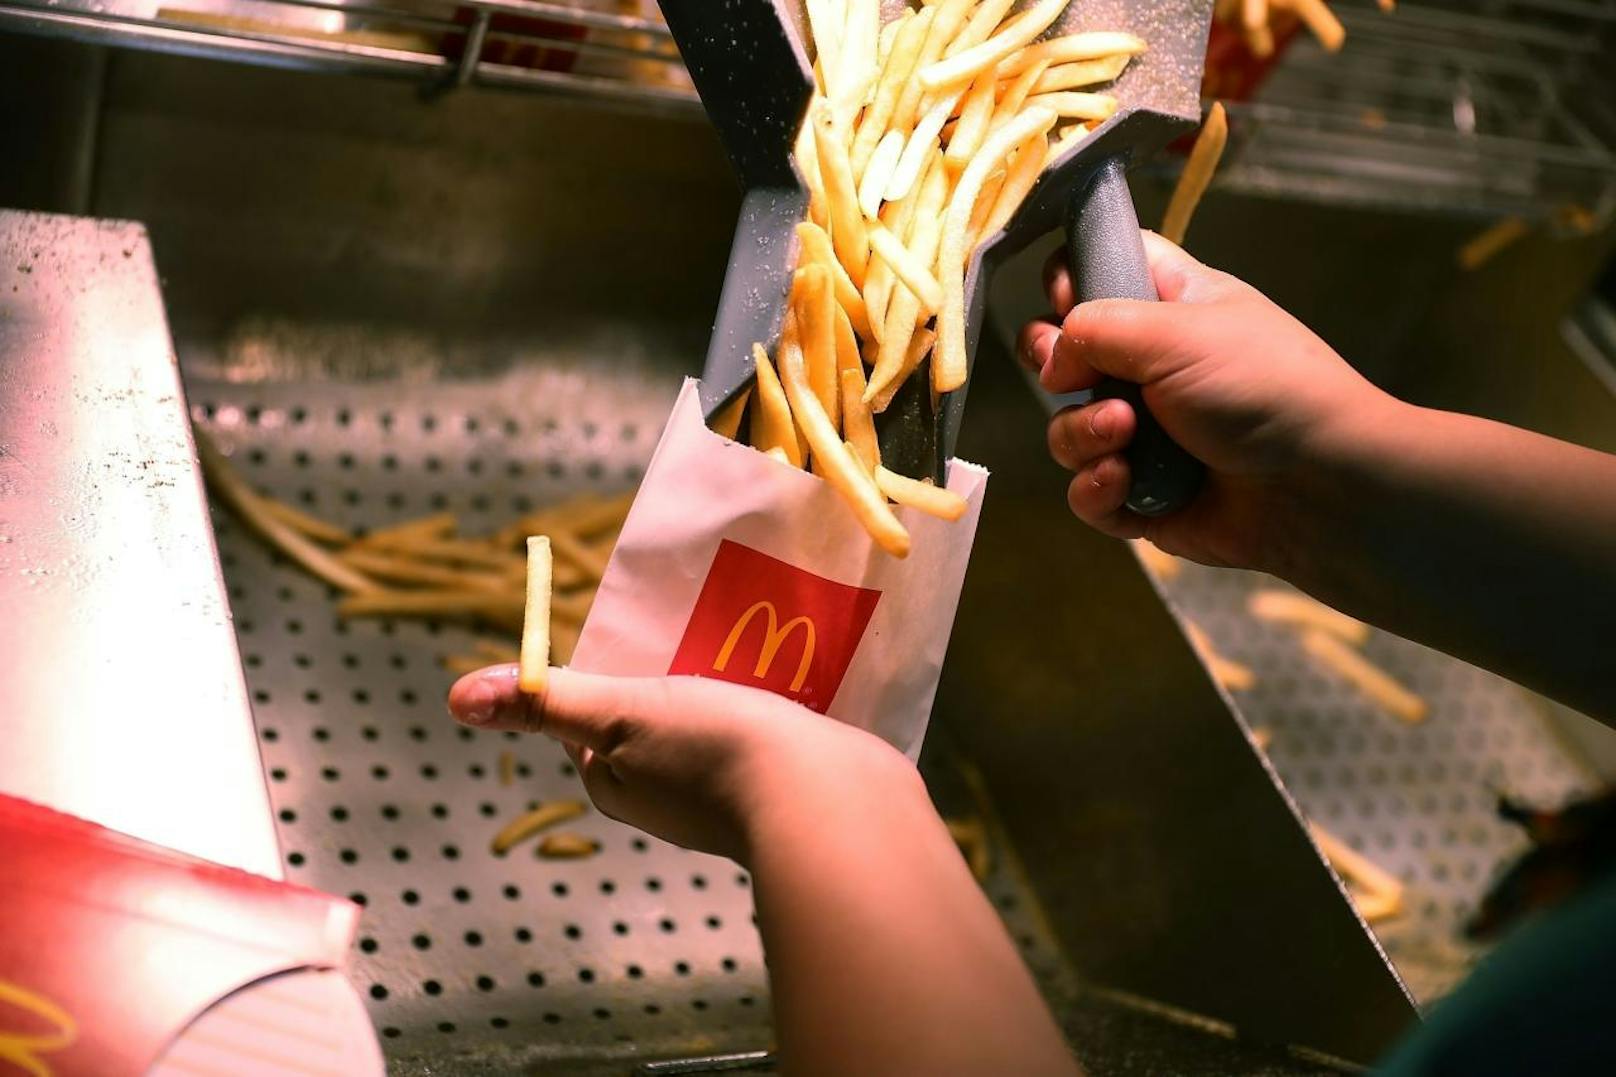 "Ich habe bei McDonald's gearbeitet und dort wurde mir beigebracht, an welcher Stelle man einen Pommes-Karton beim Befüllen drücken muss, dass er voll aussieht, aber nicht ist", behauptet Reddit-User ExperiMENTALbunny.